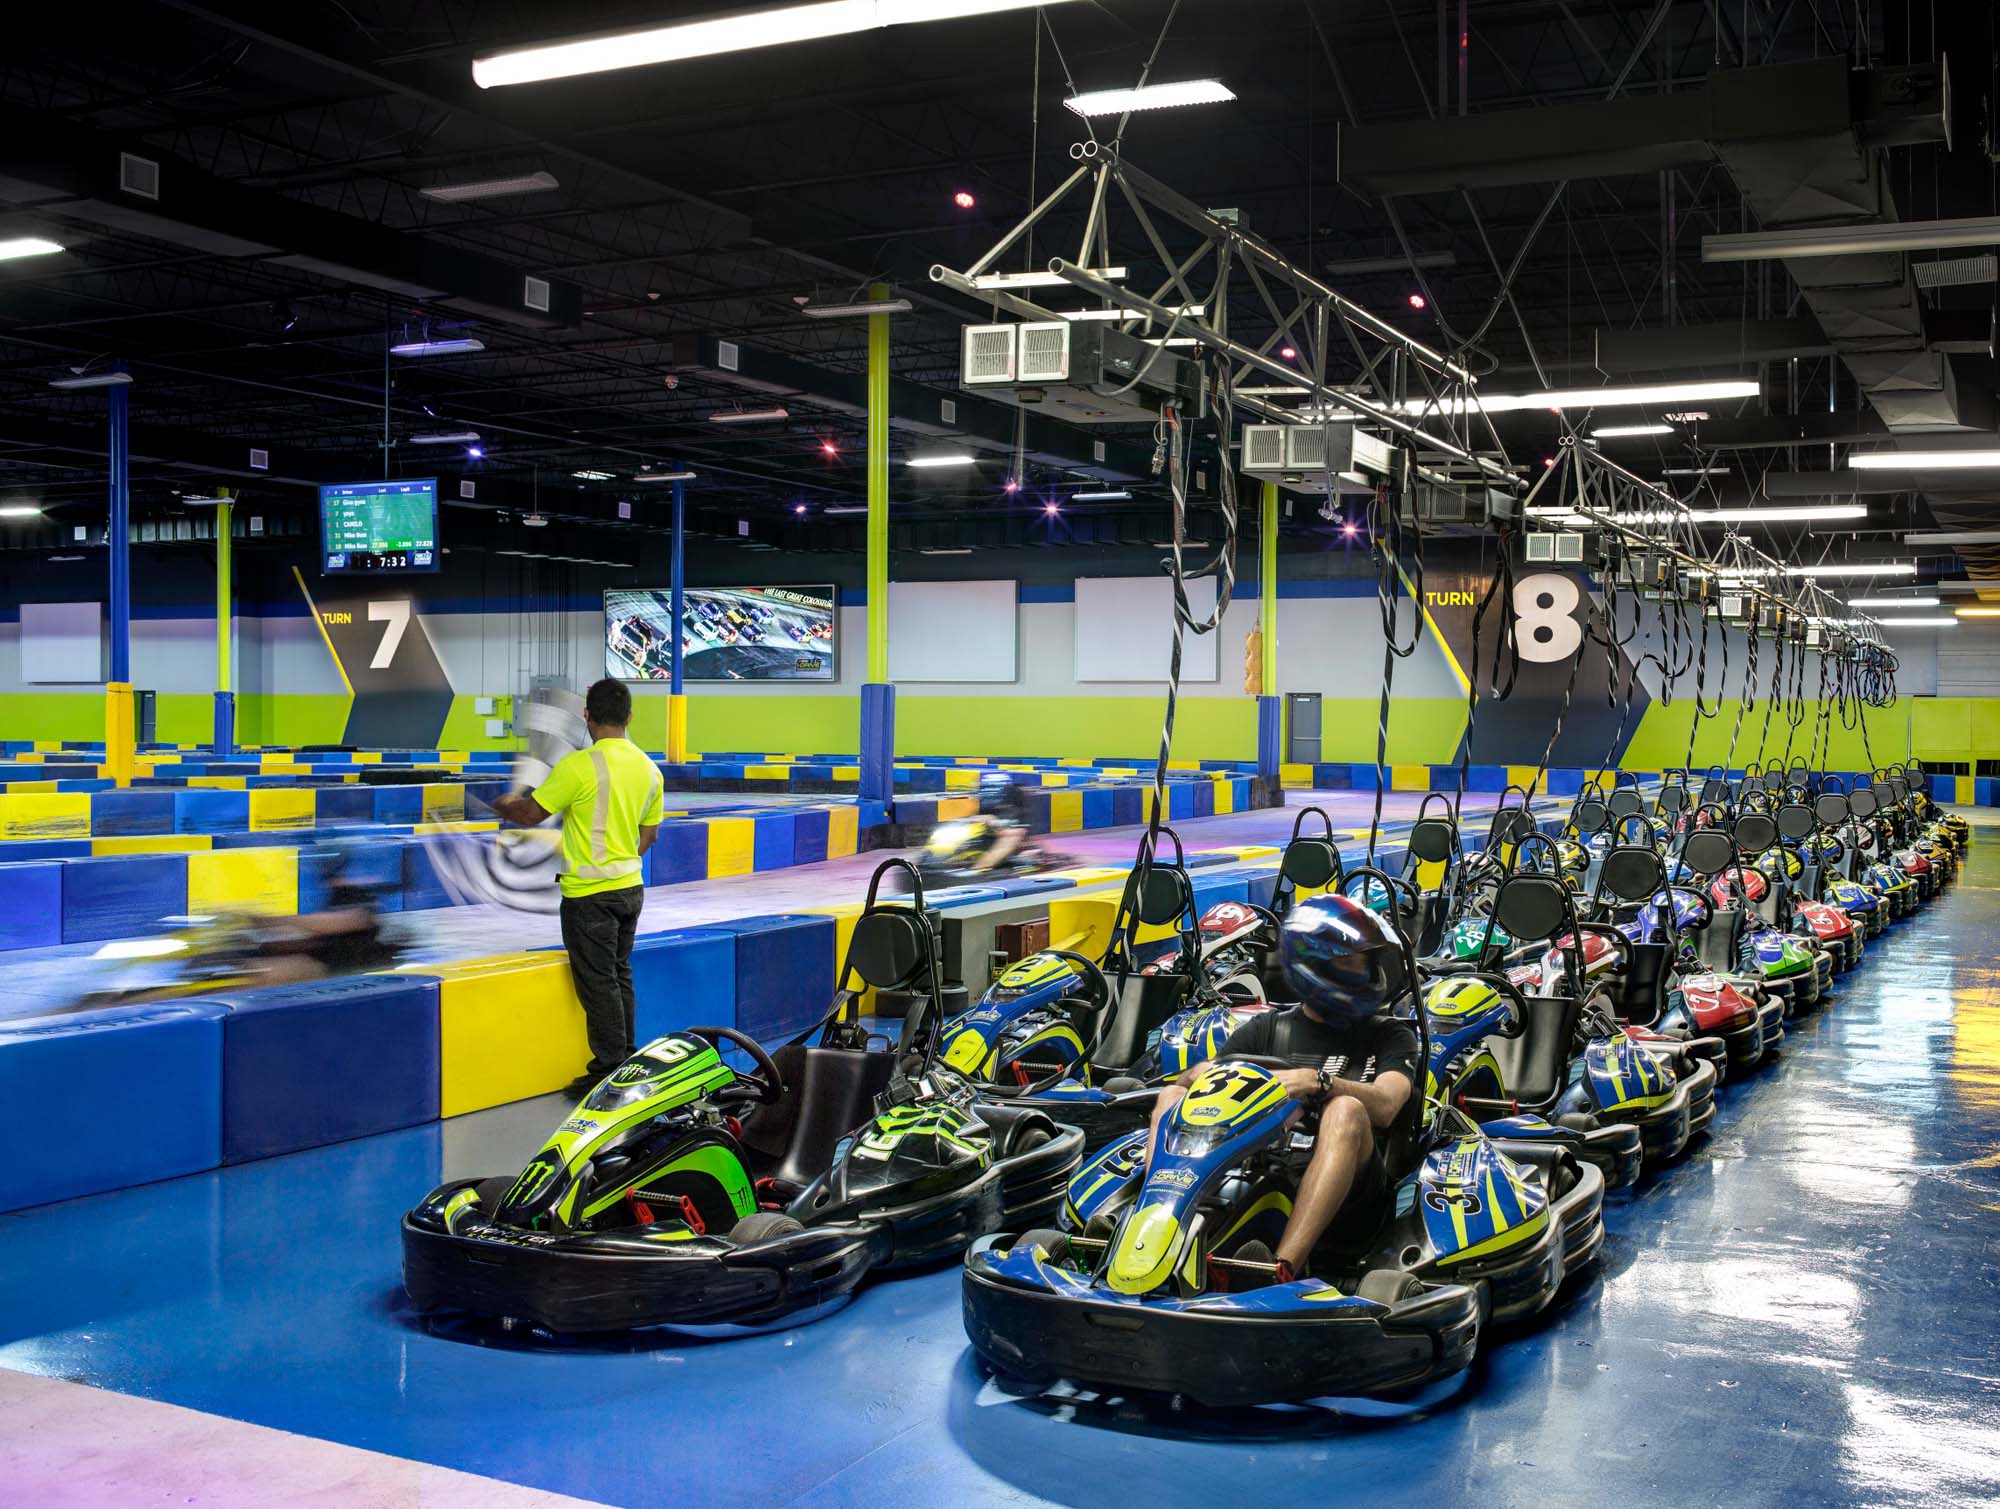 nascar idrive indoor kart racing